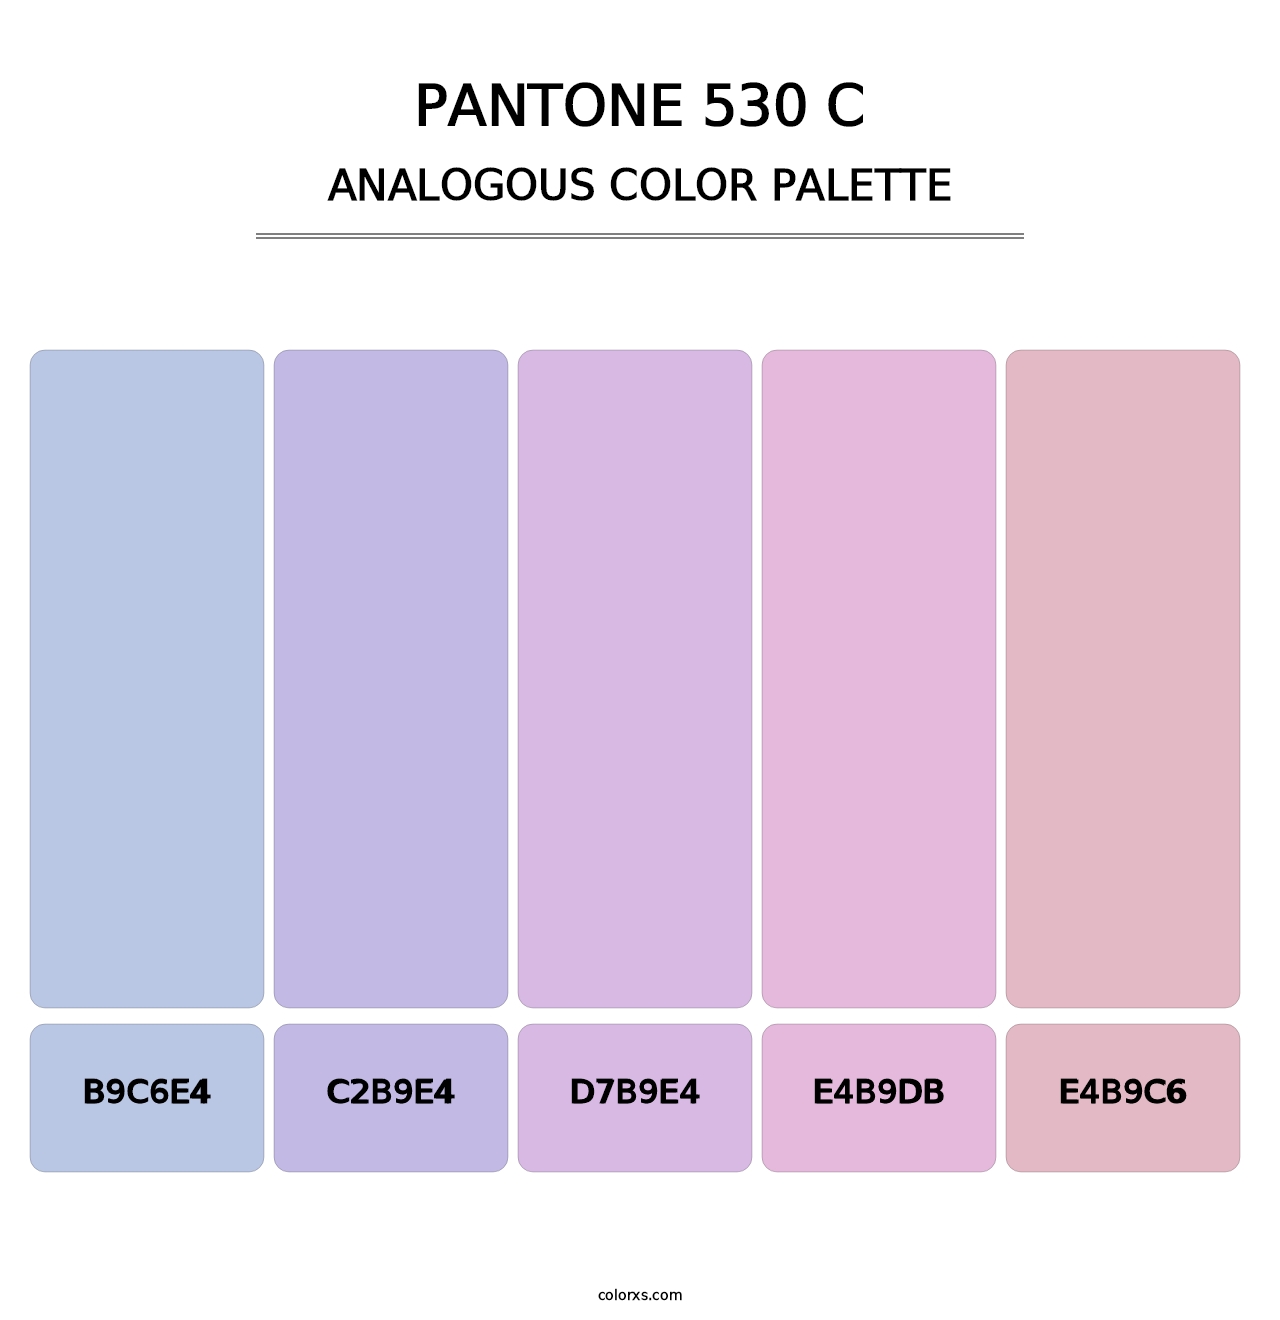 PANTONE 530 C - Analogous Color Palette